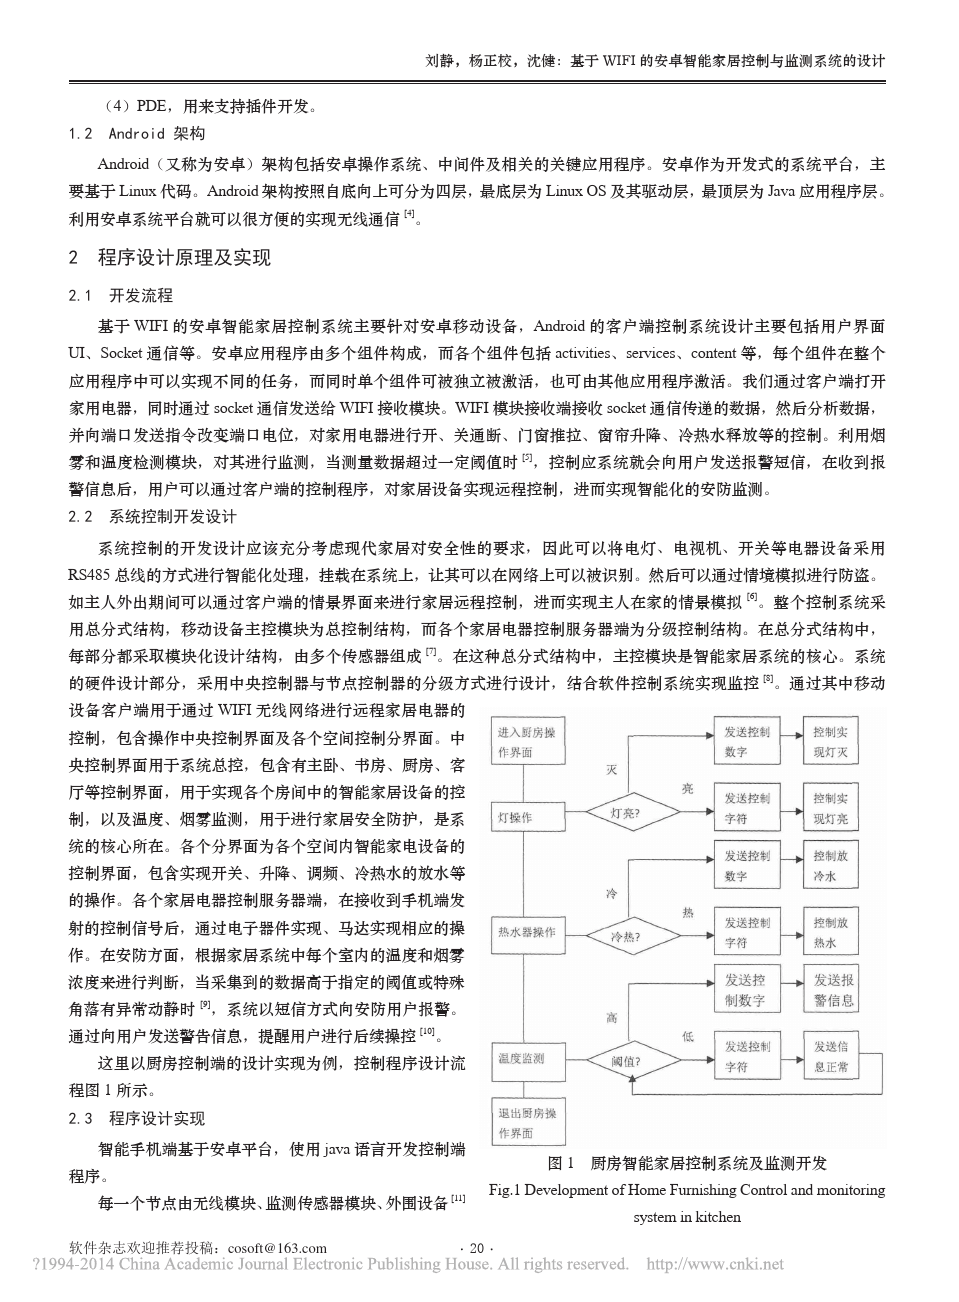 基于WIFI的安卓智能家居控制与监测系统的设计_刘静